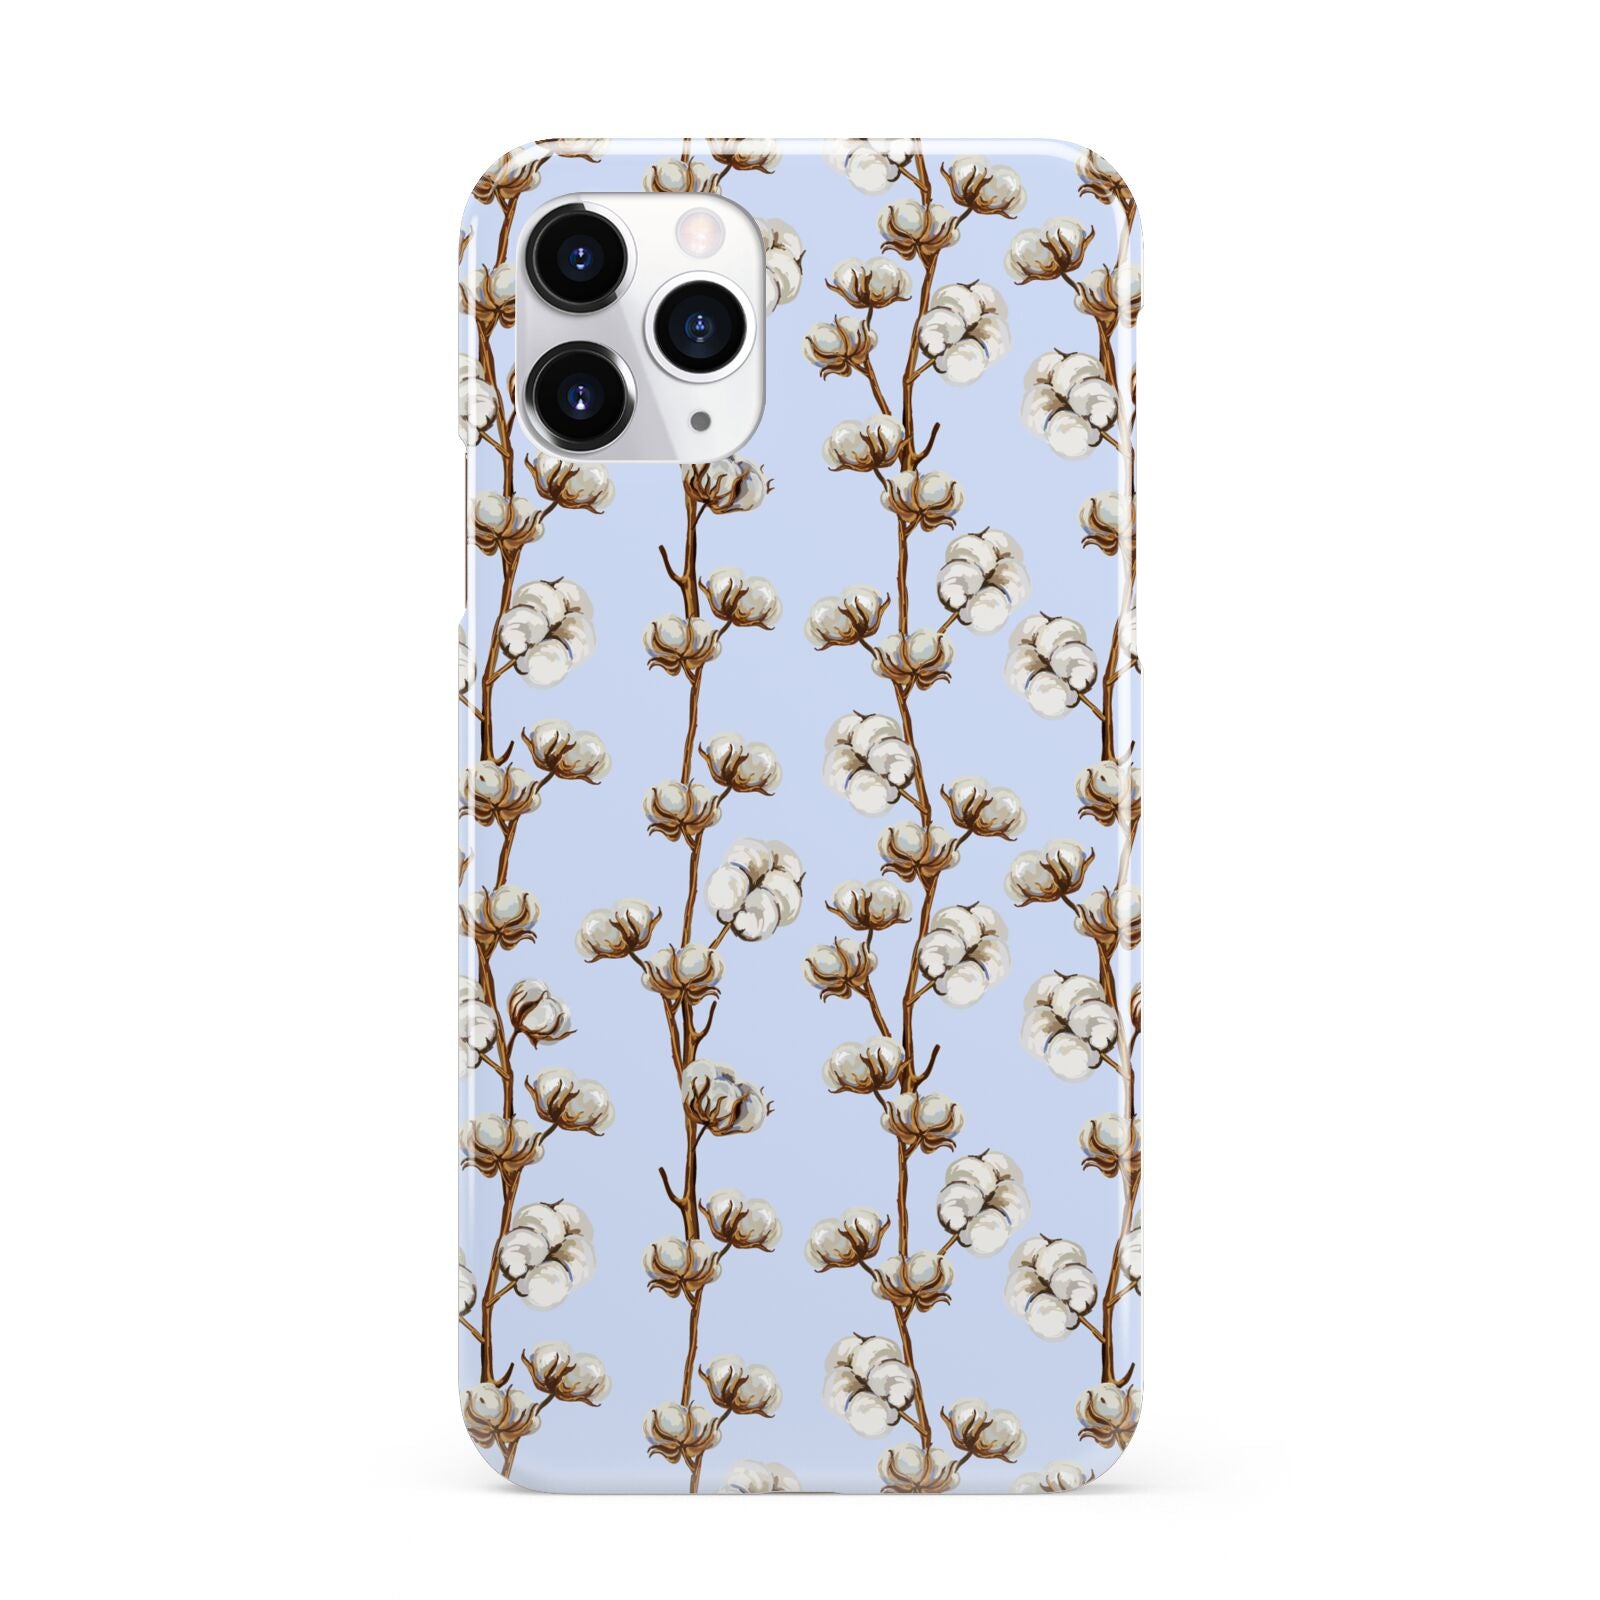 Cotton Branch iPhone 11 Pro 3D Snap Case